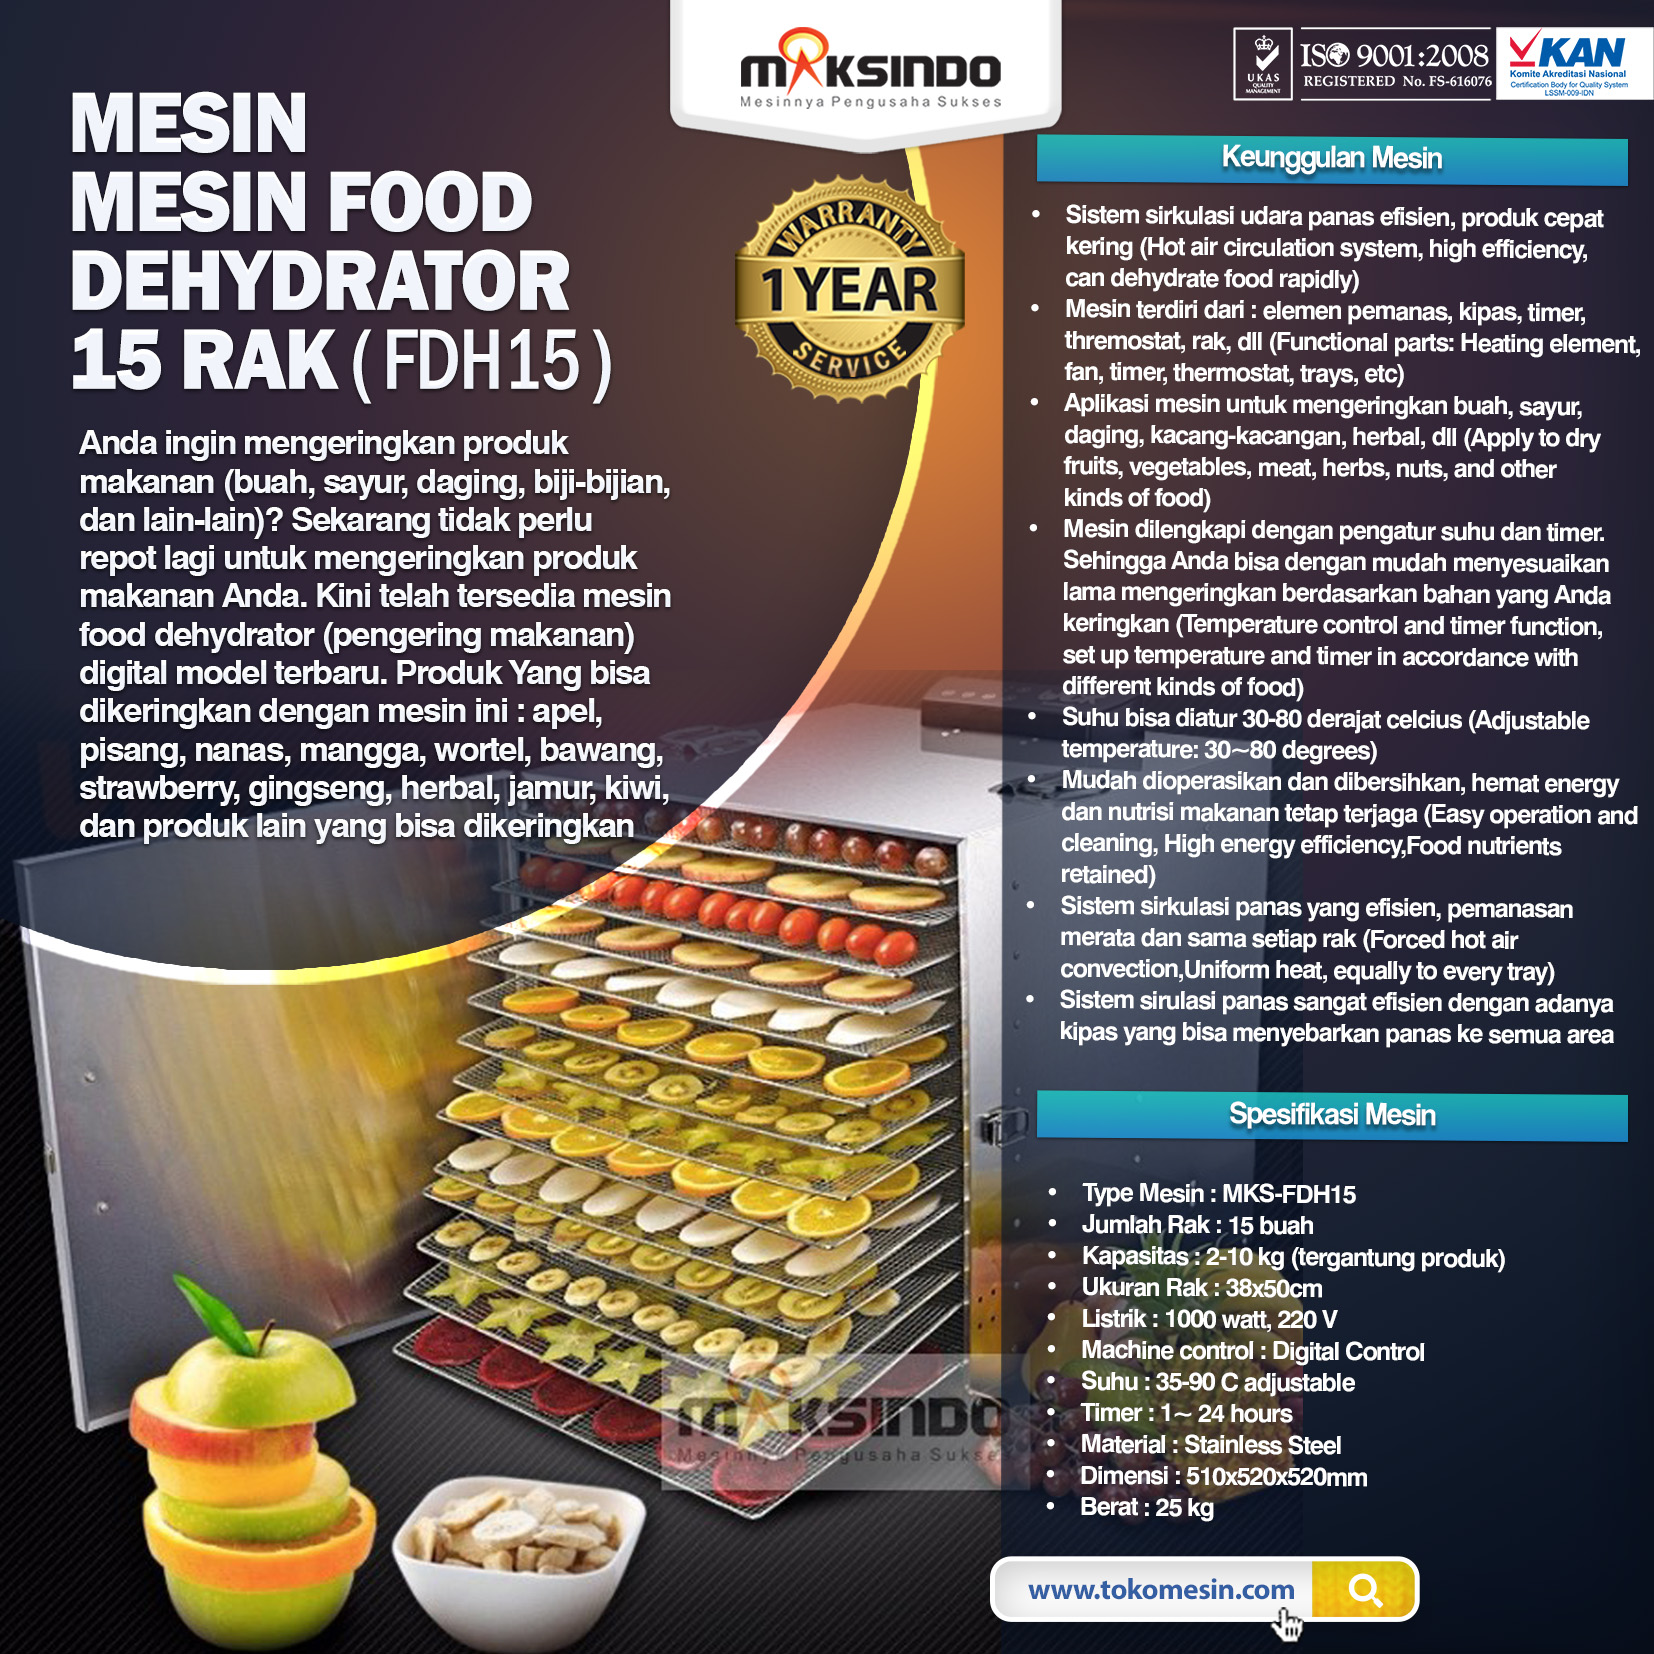  Jual  Mesin Food Dehydrator 15 Rak  FDH15 di  Medan  Toko 